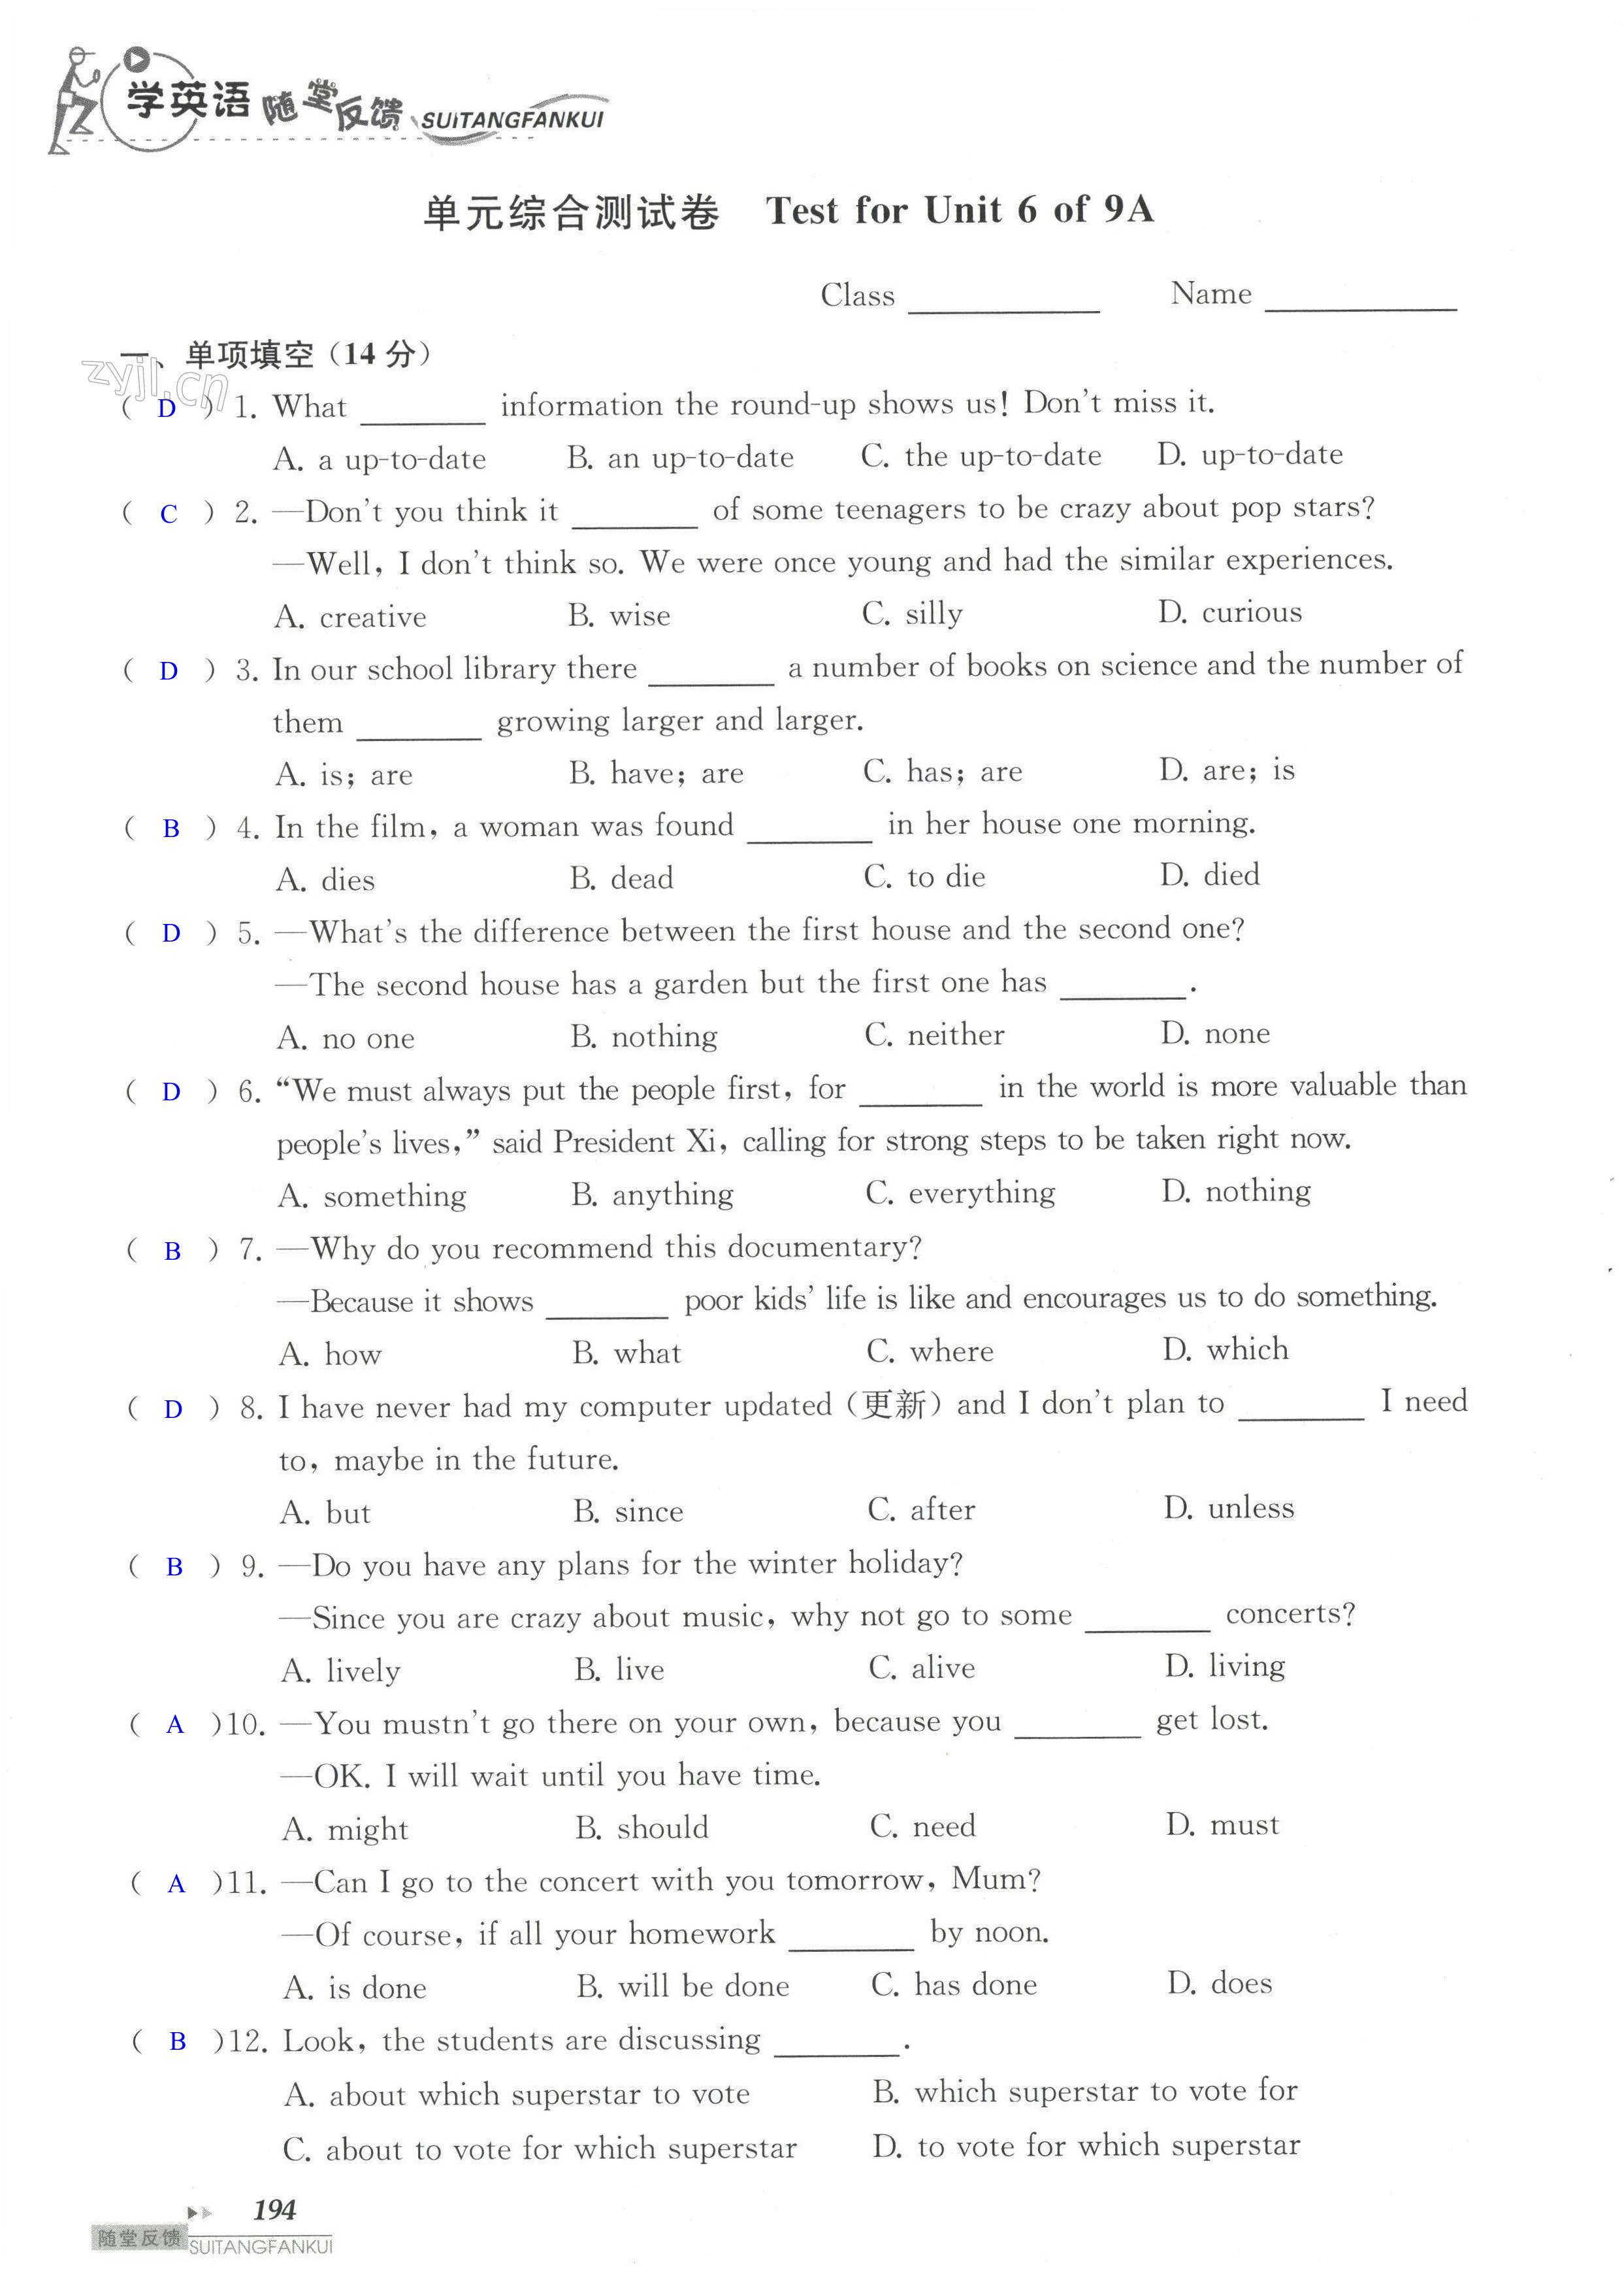 单元综合测试卷 Test for Unit 6 of 9A - 第194页